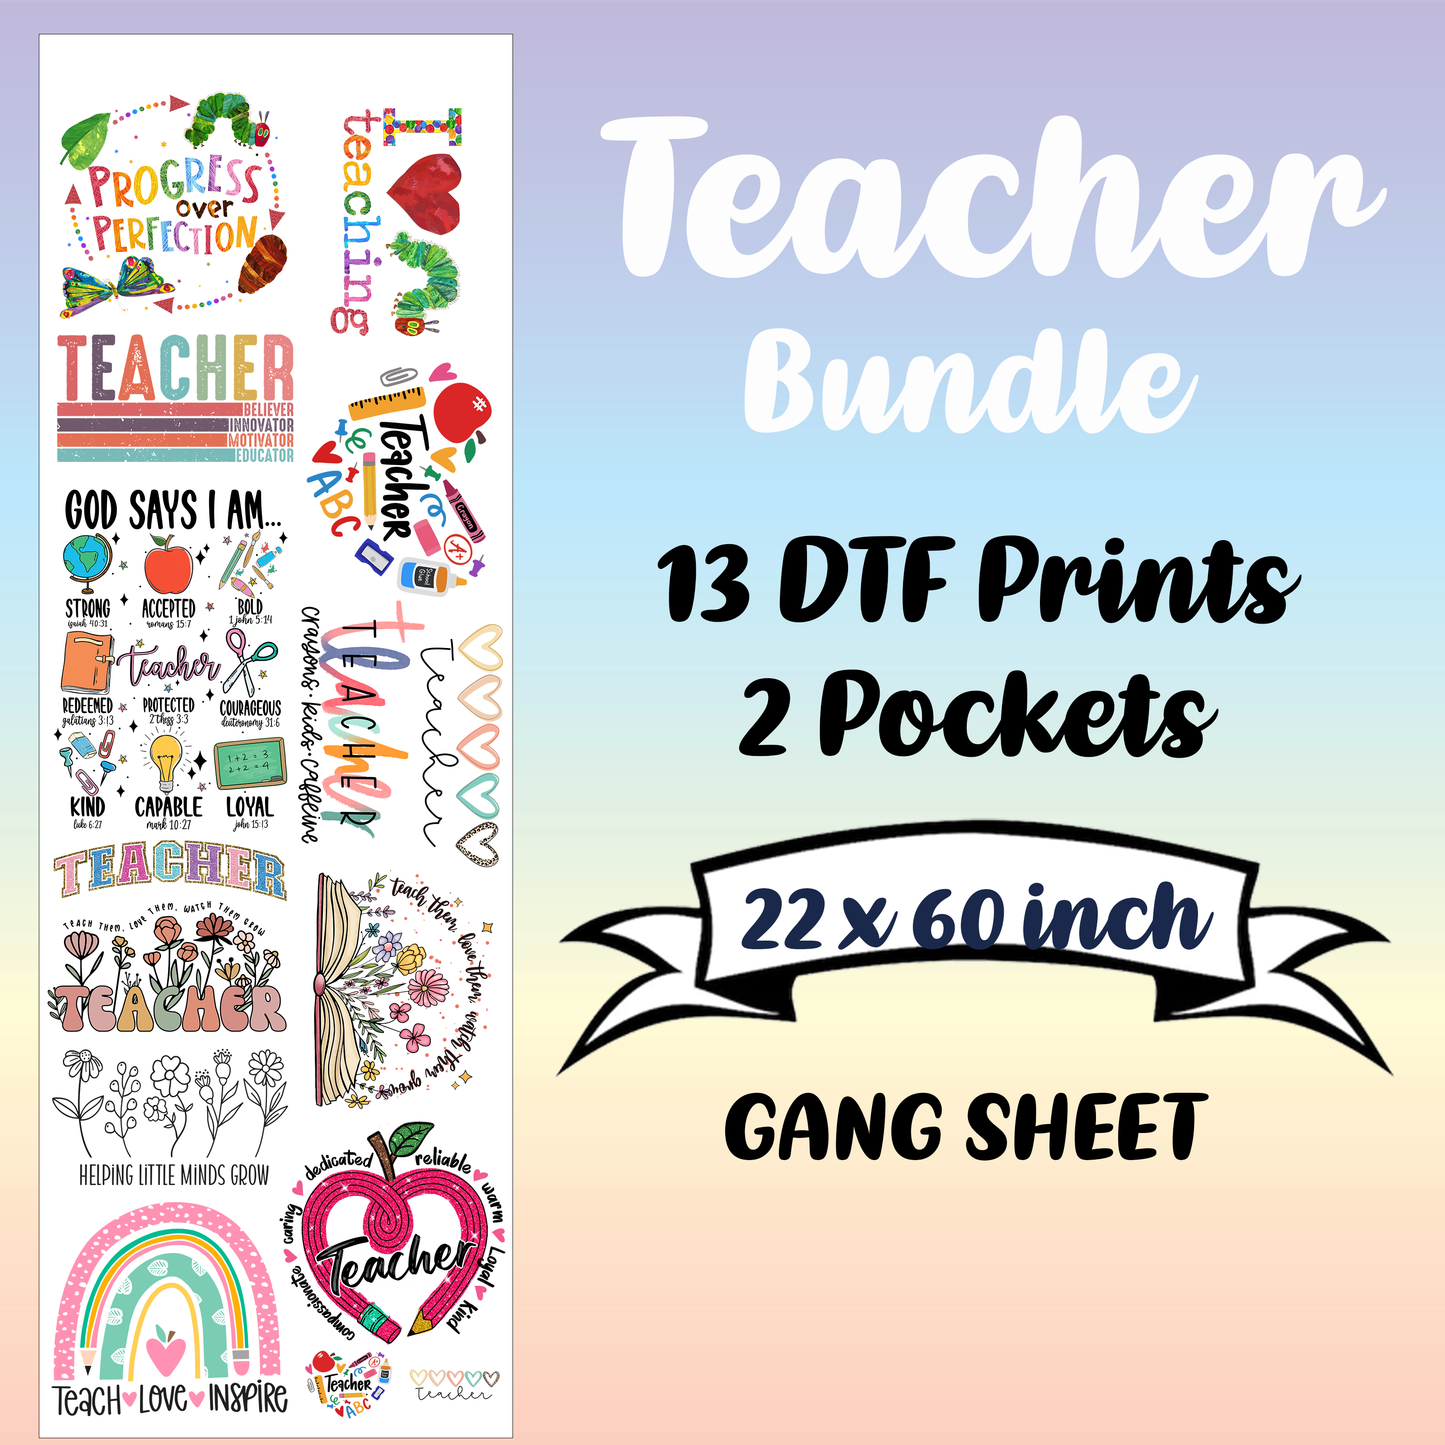 Teacher Premade Gang sheet